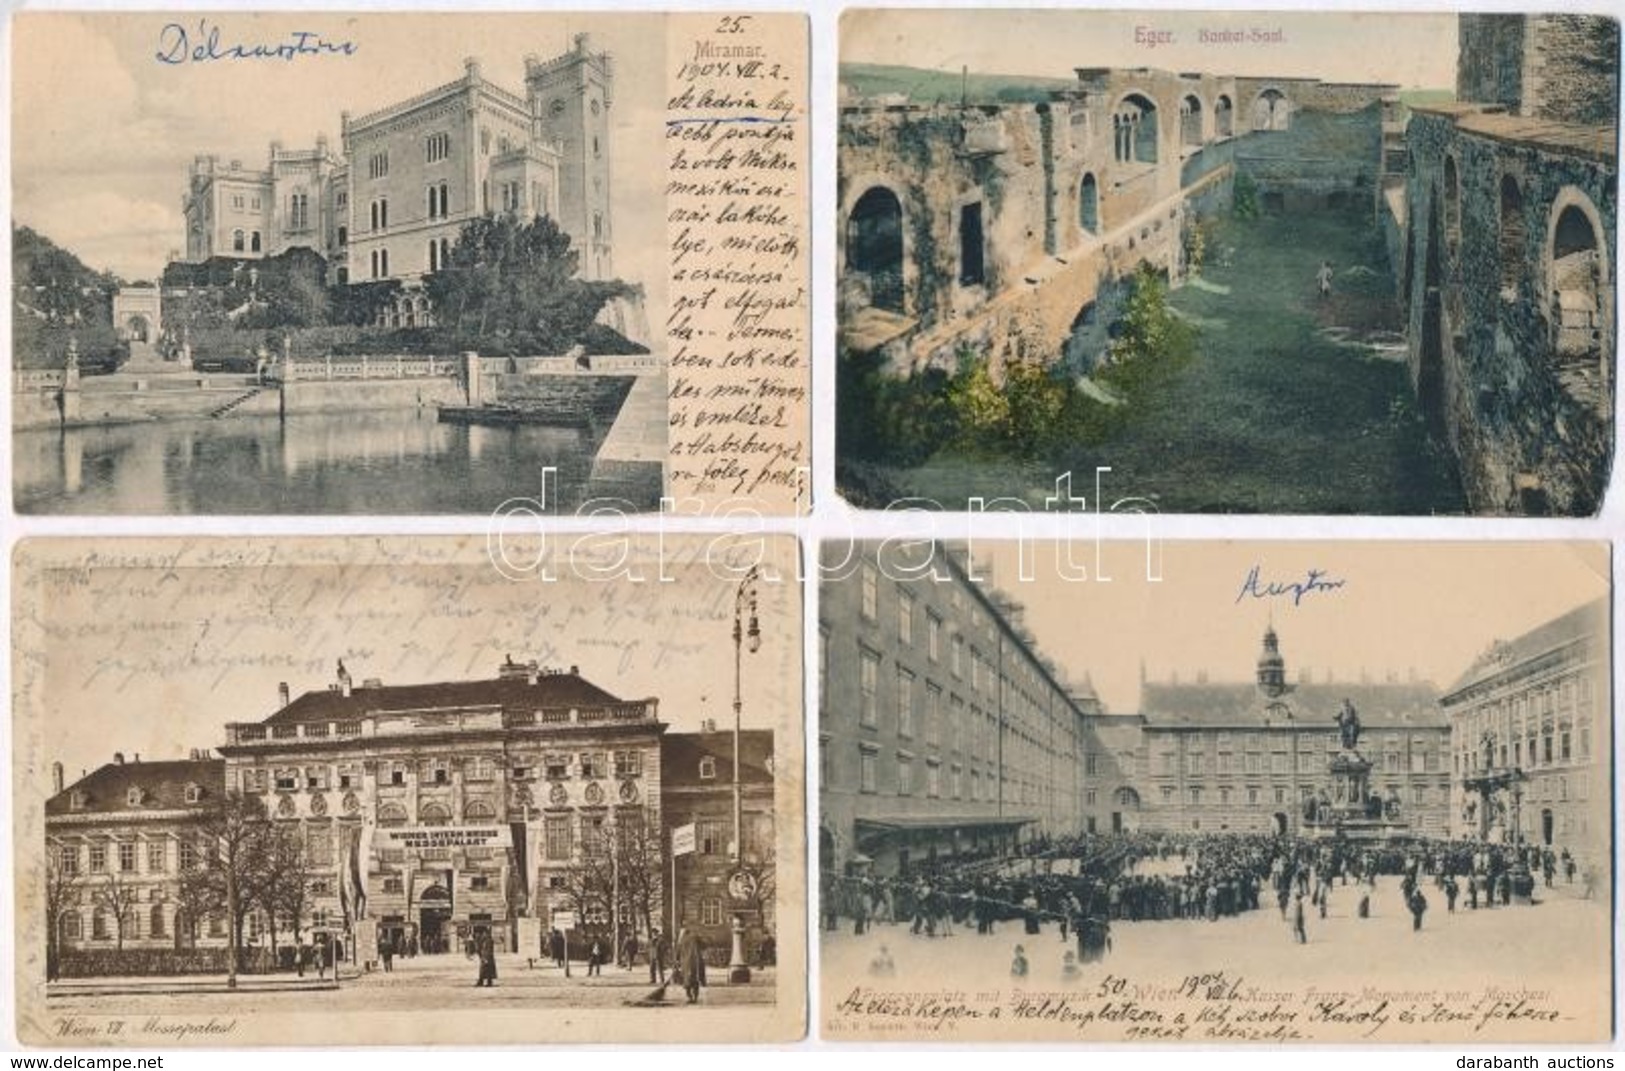 ** * 40 Db RÉGI Külföldi Városképes Lap / 40 Pre-1945 European Town-view Postcards - Unclassified